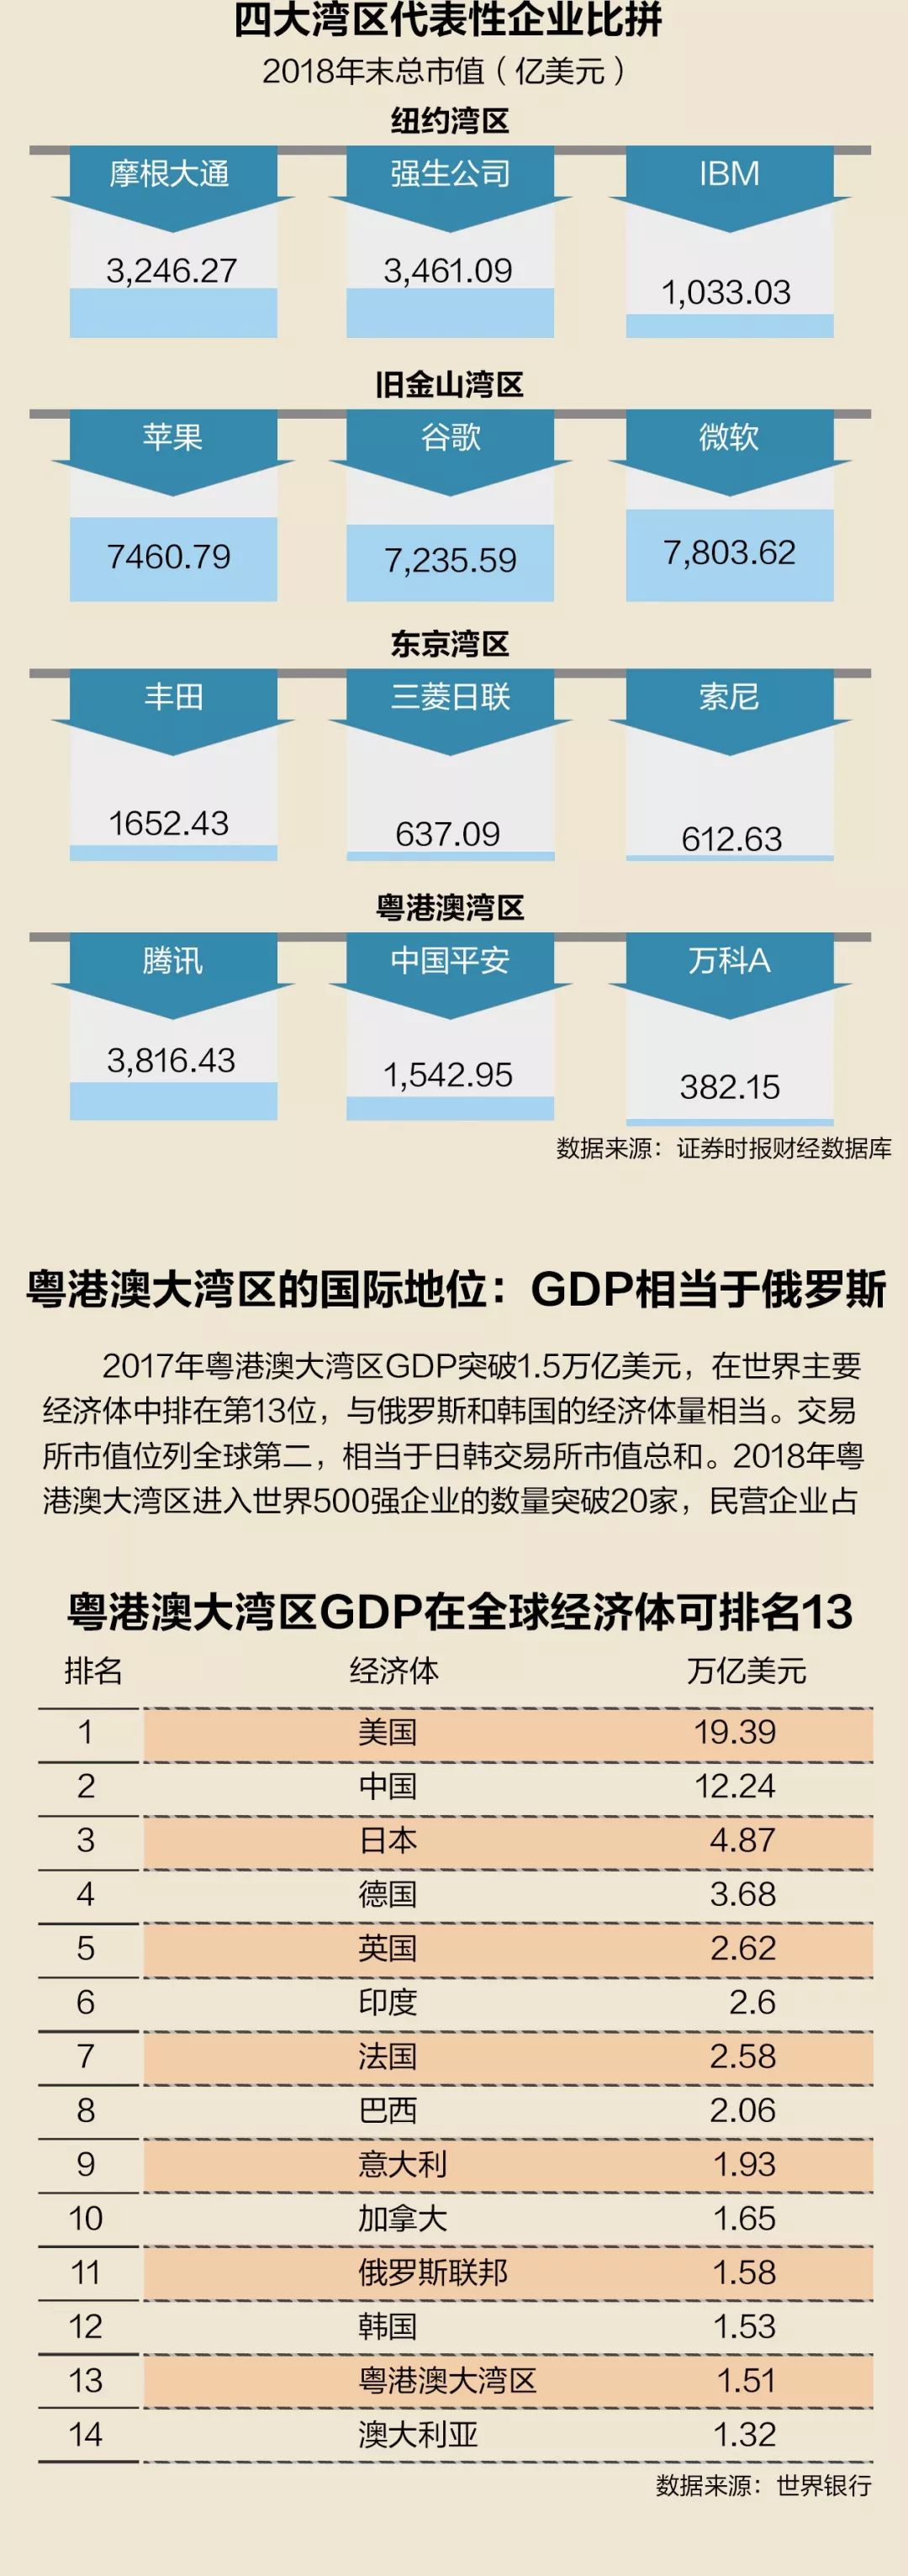 粤港澳大湾区:GDP可排全球经济体第13,股票市